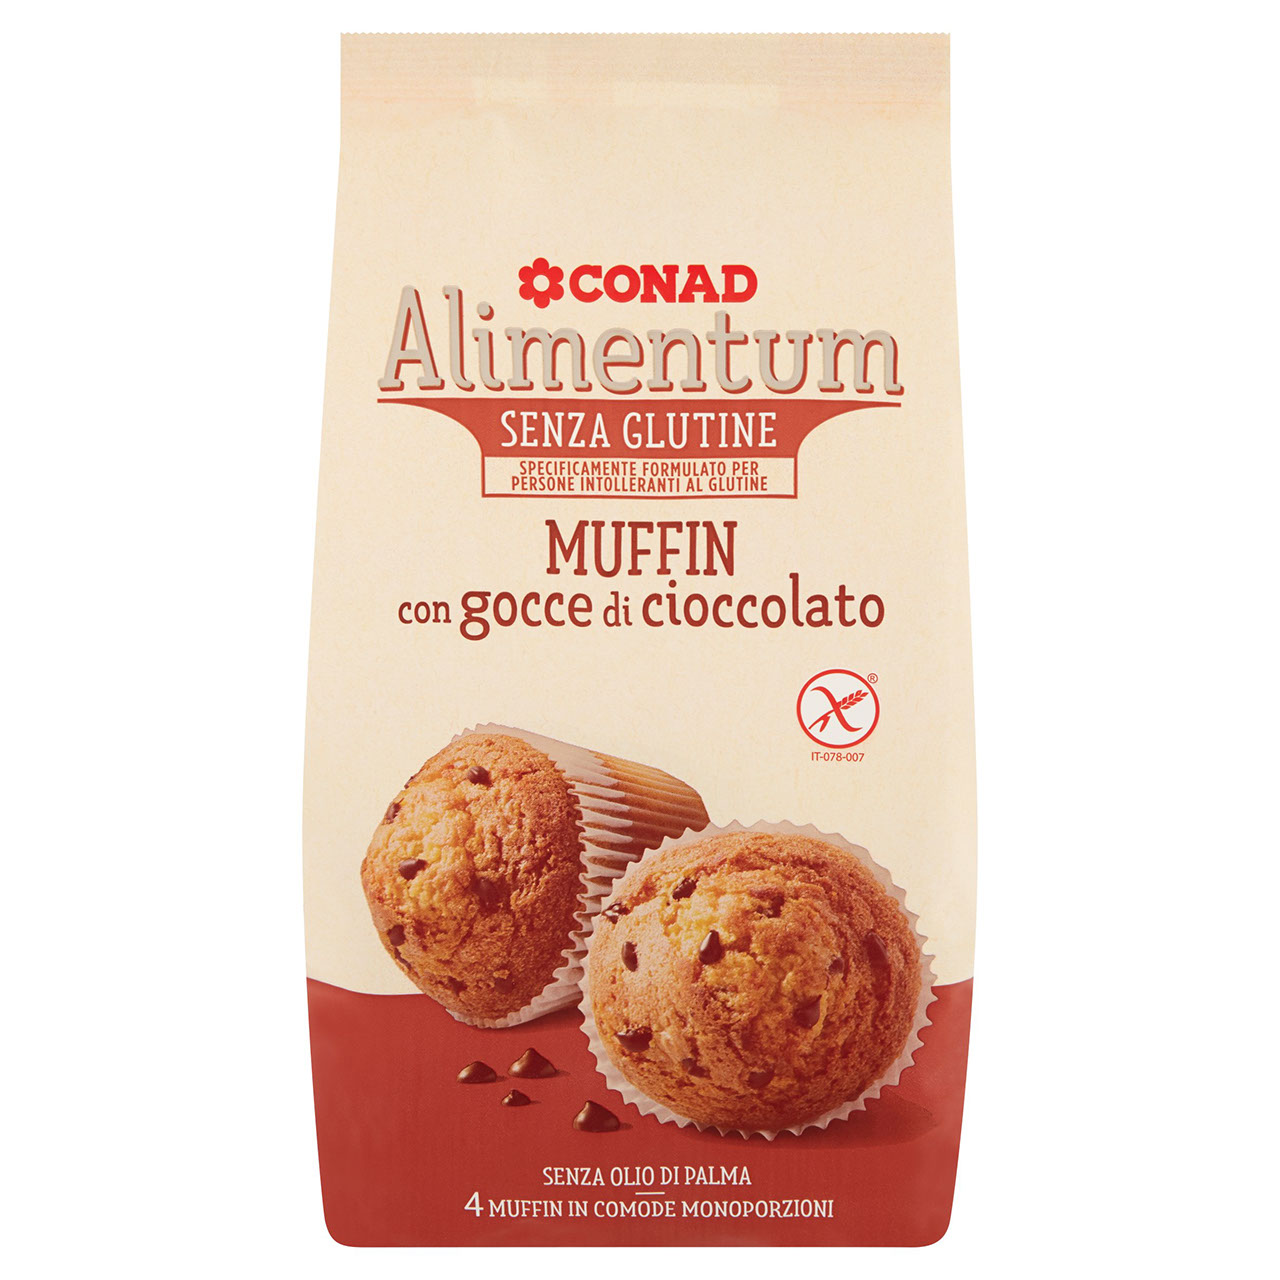 Muffin Senza Glutine al Cioccolato Alimentum Conad